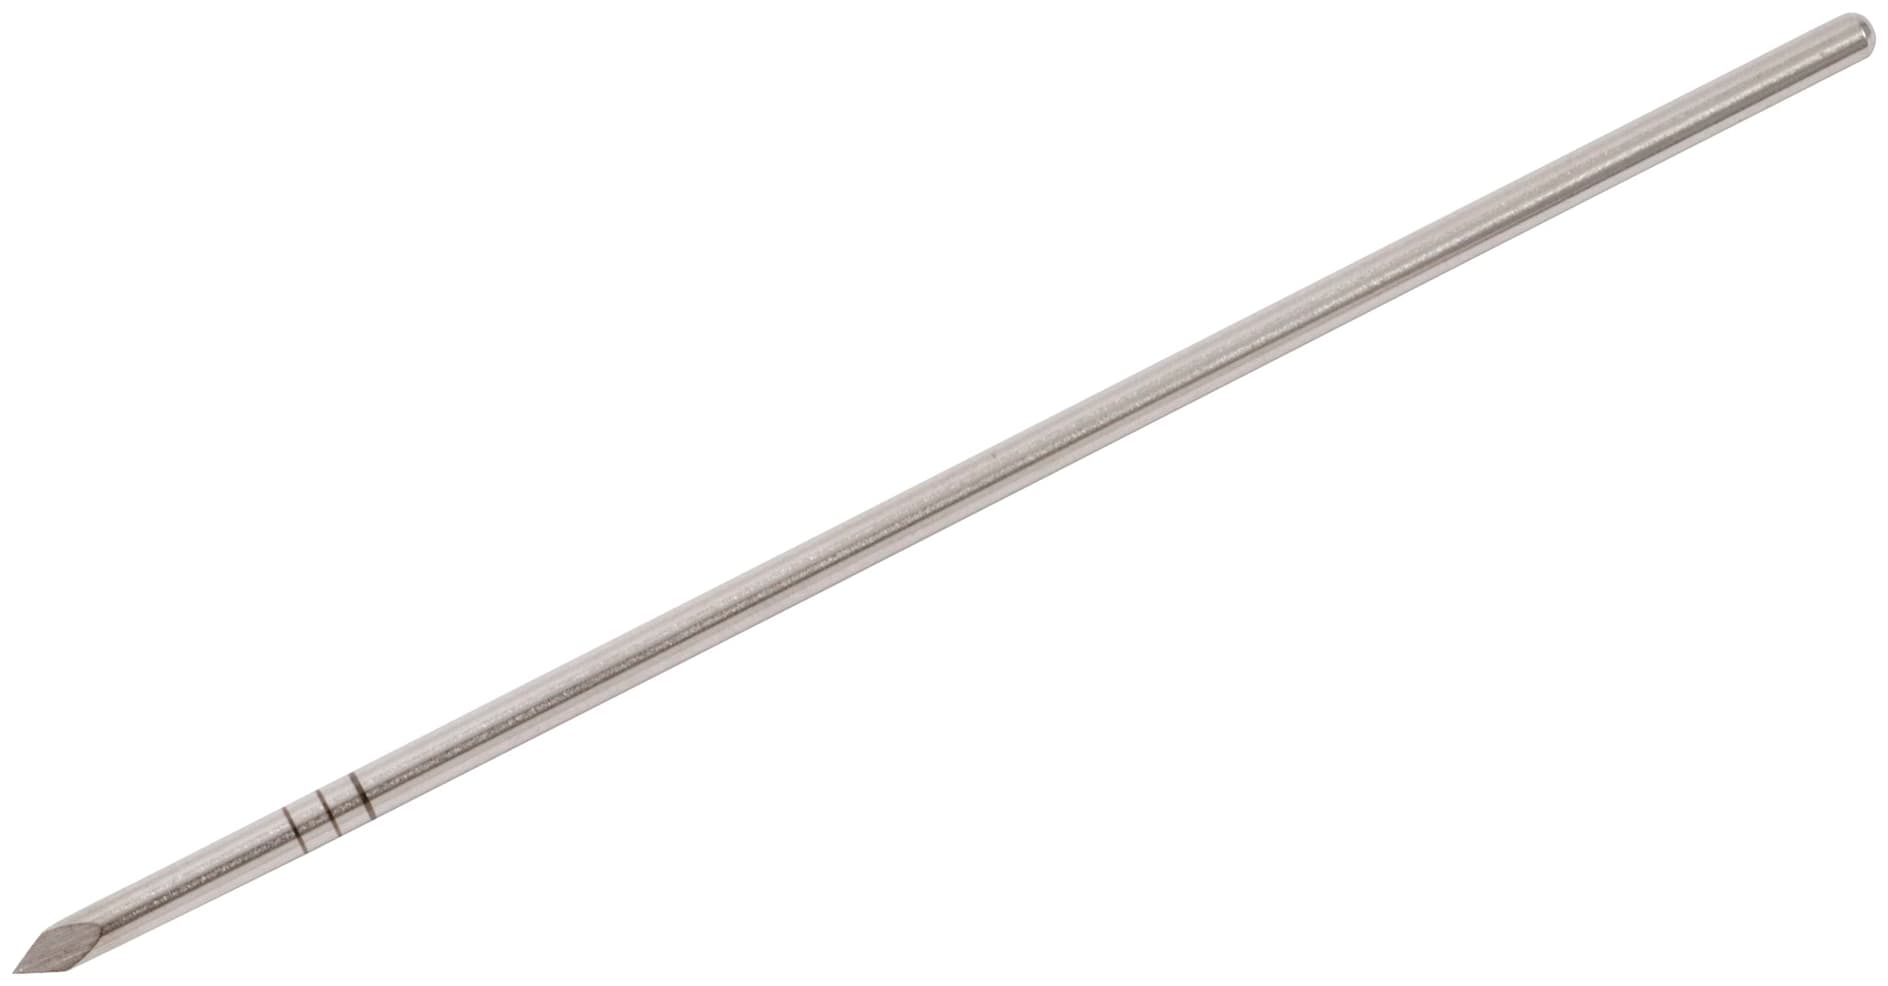 AnaToemic phalangeal Prothese K-Draht, 2.8 mm, 110.0 mm